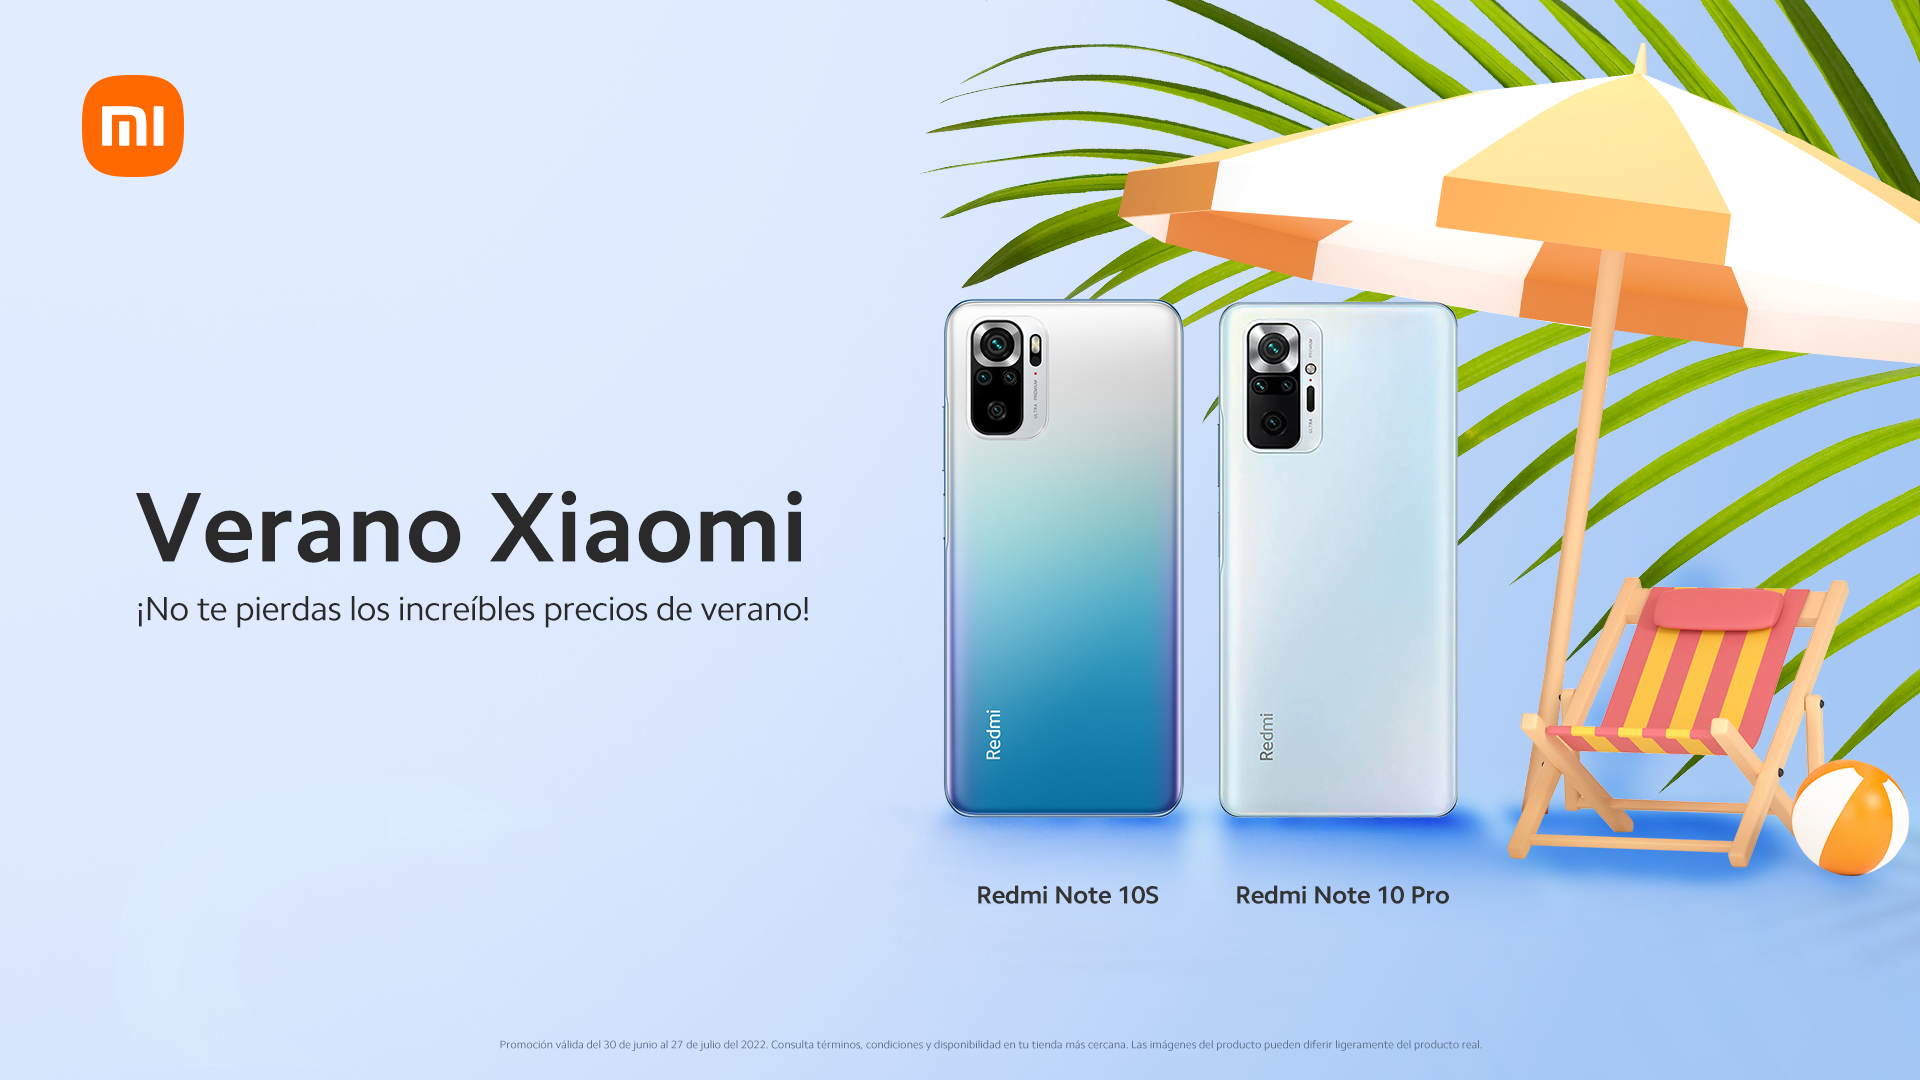 “Increíbles precios de verano que Xiaomi trae para julio”